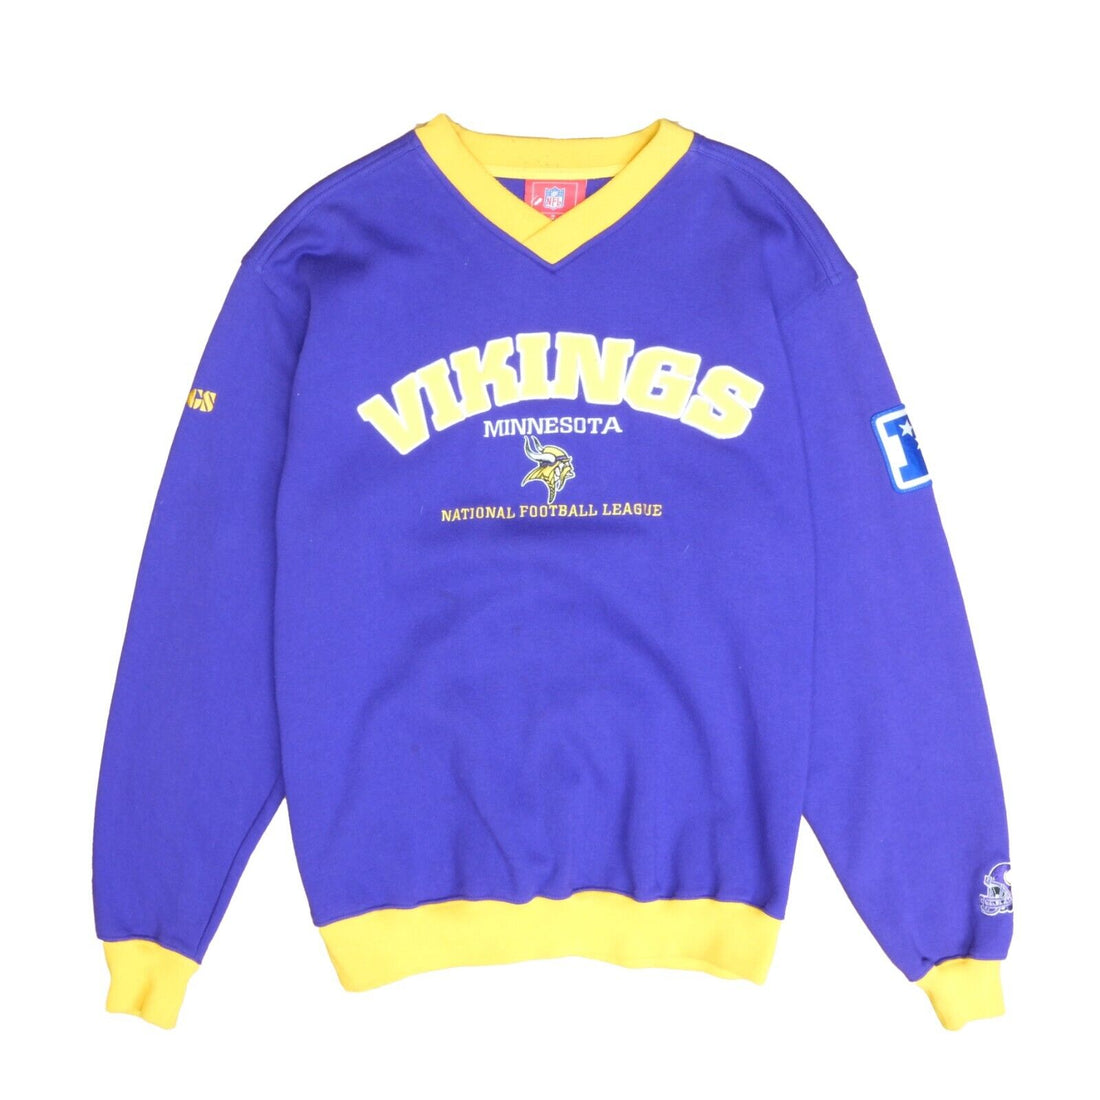 Vintage Minnesota Vikings Sweatshirt Crewneck Size Medium Purple NFL